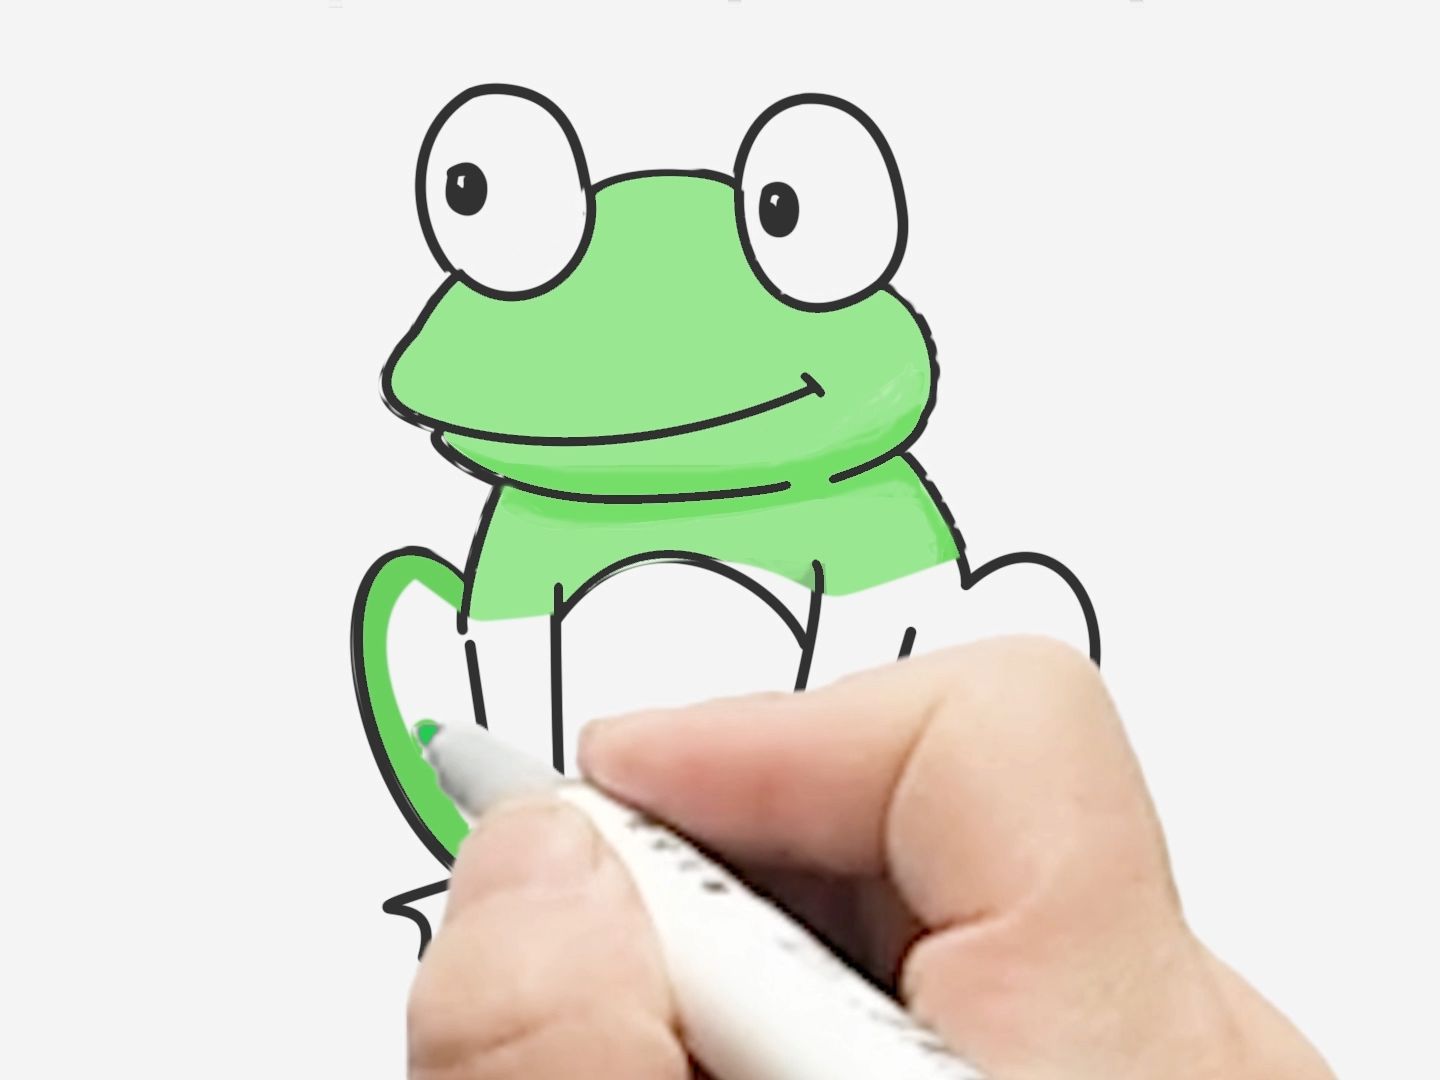 小青蛙简笔画简单图片